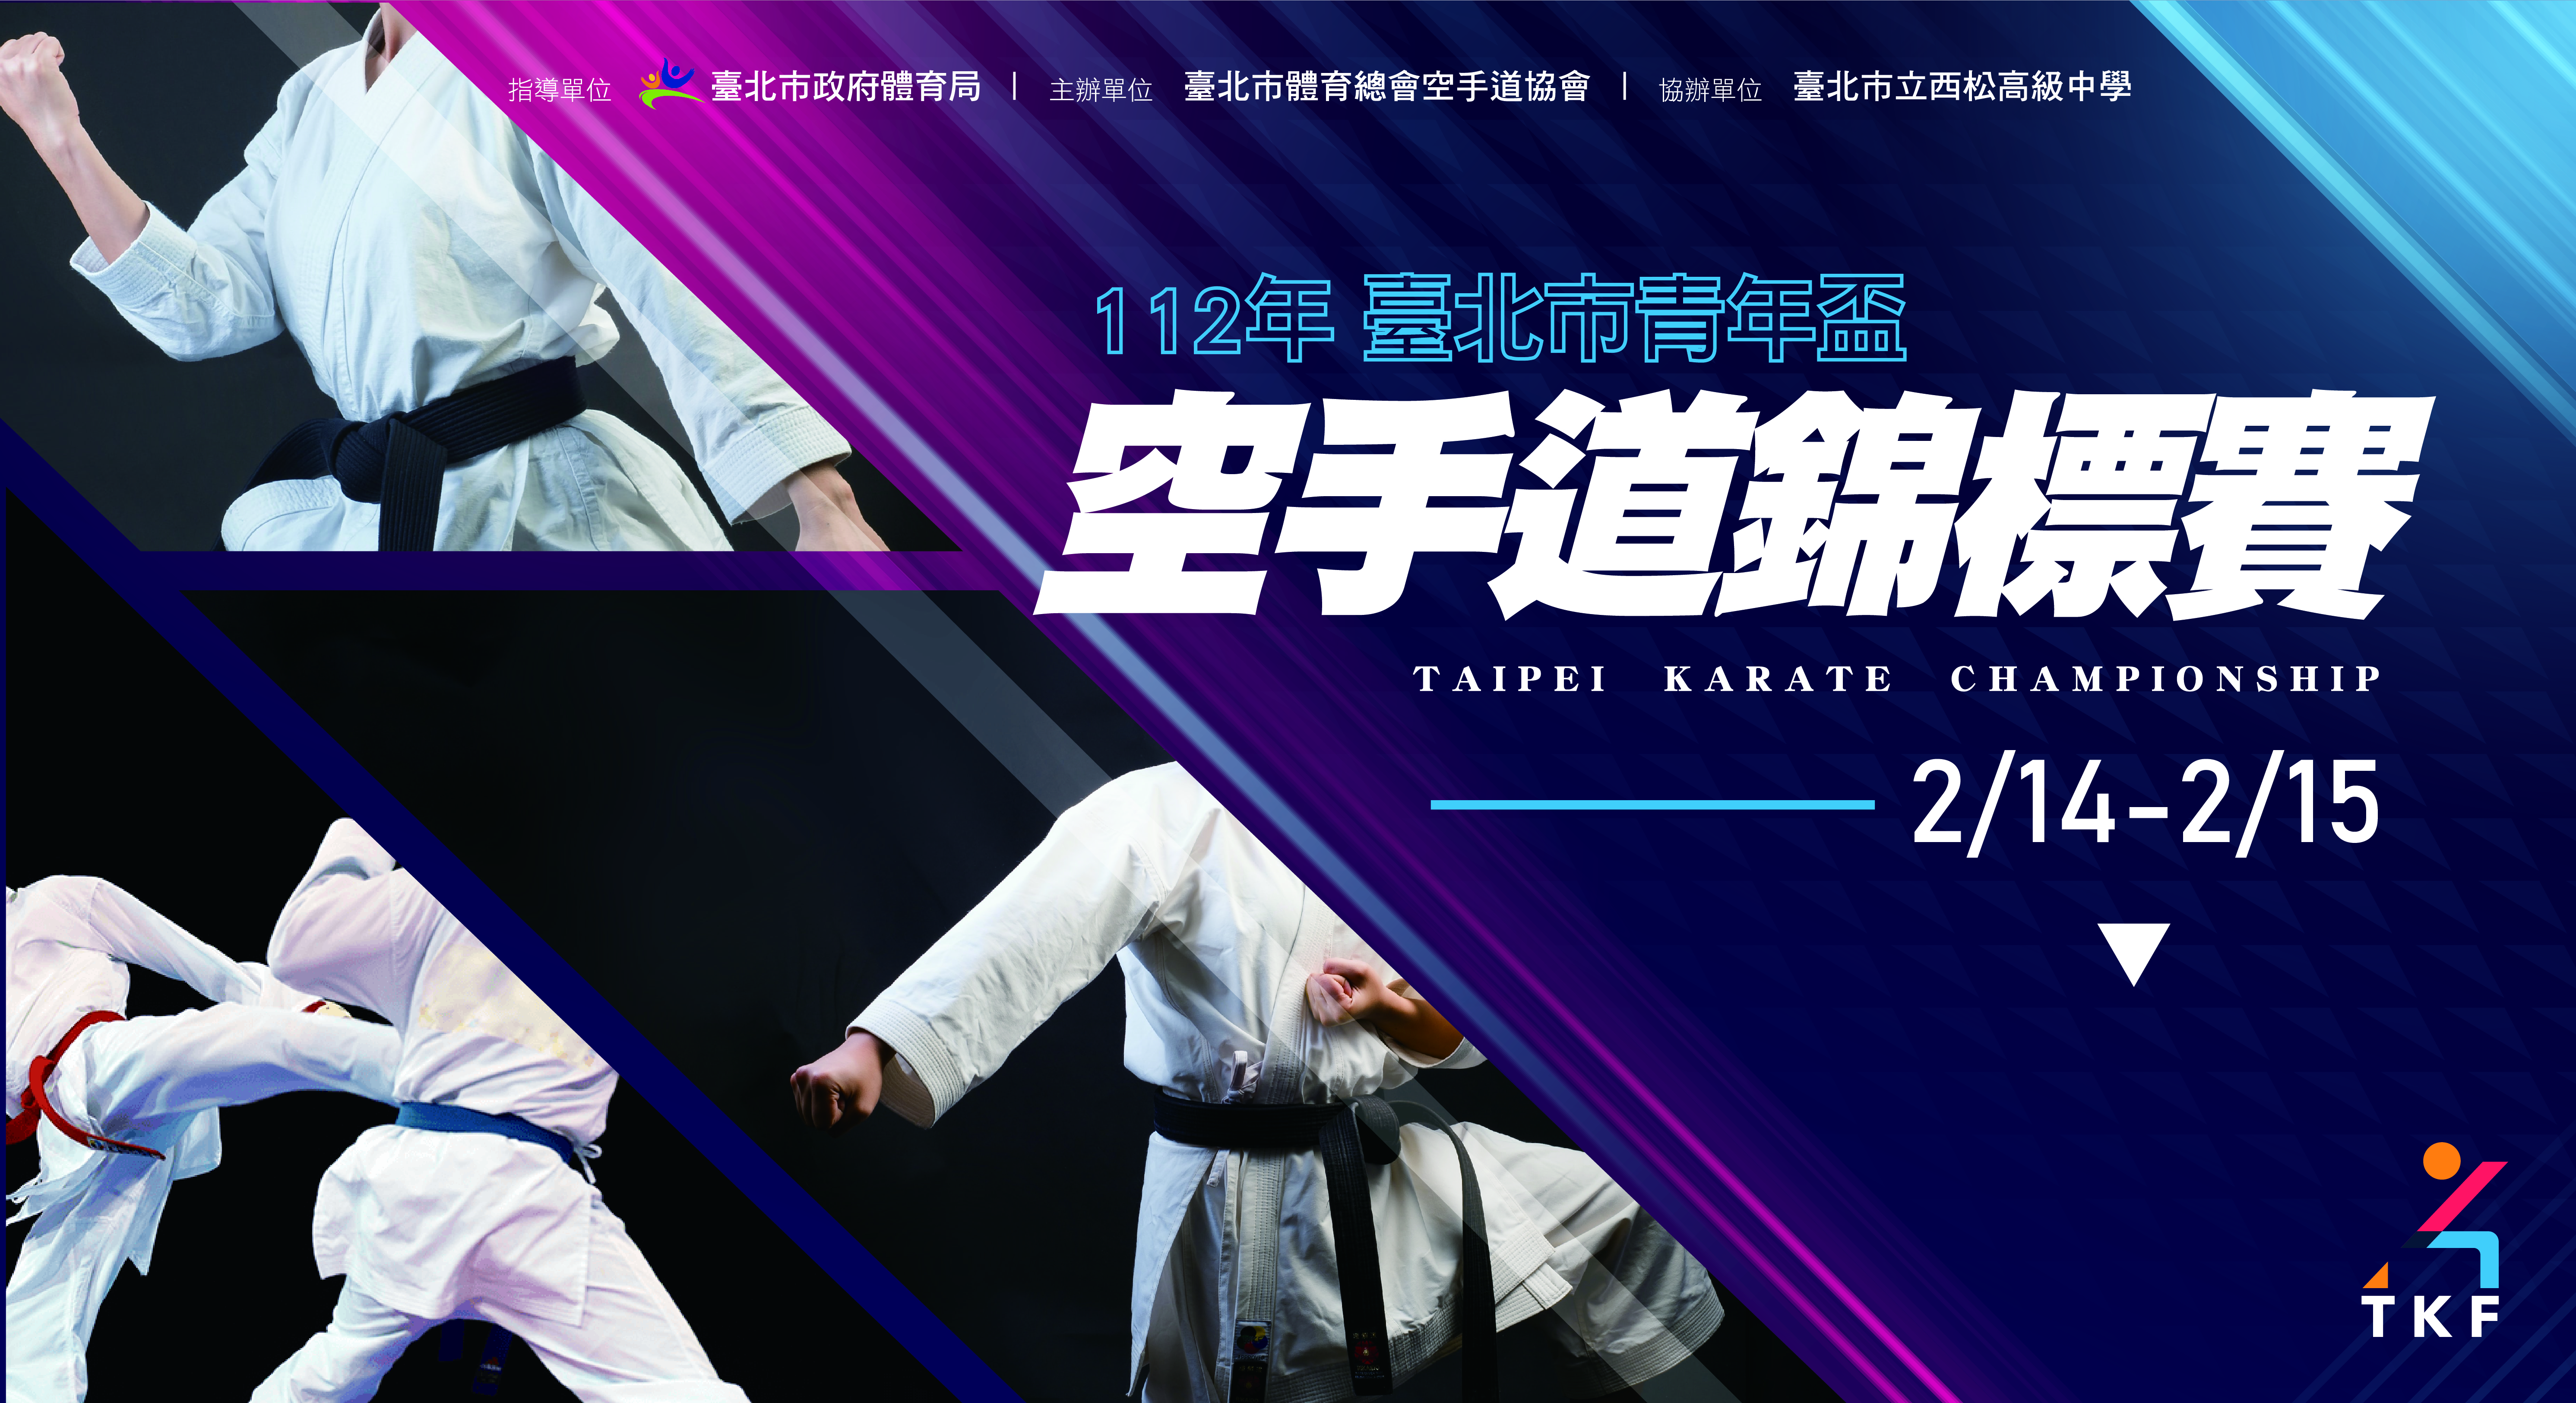 112年台北市青年盃空手道錦標賽主視覺(轉外框)-01.jpg